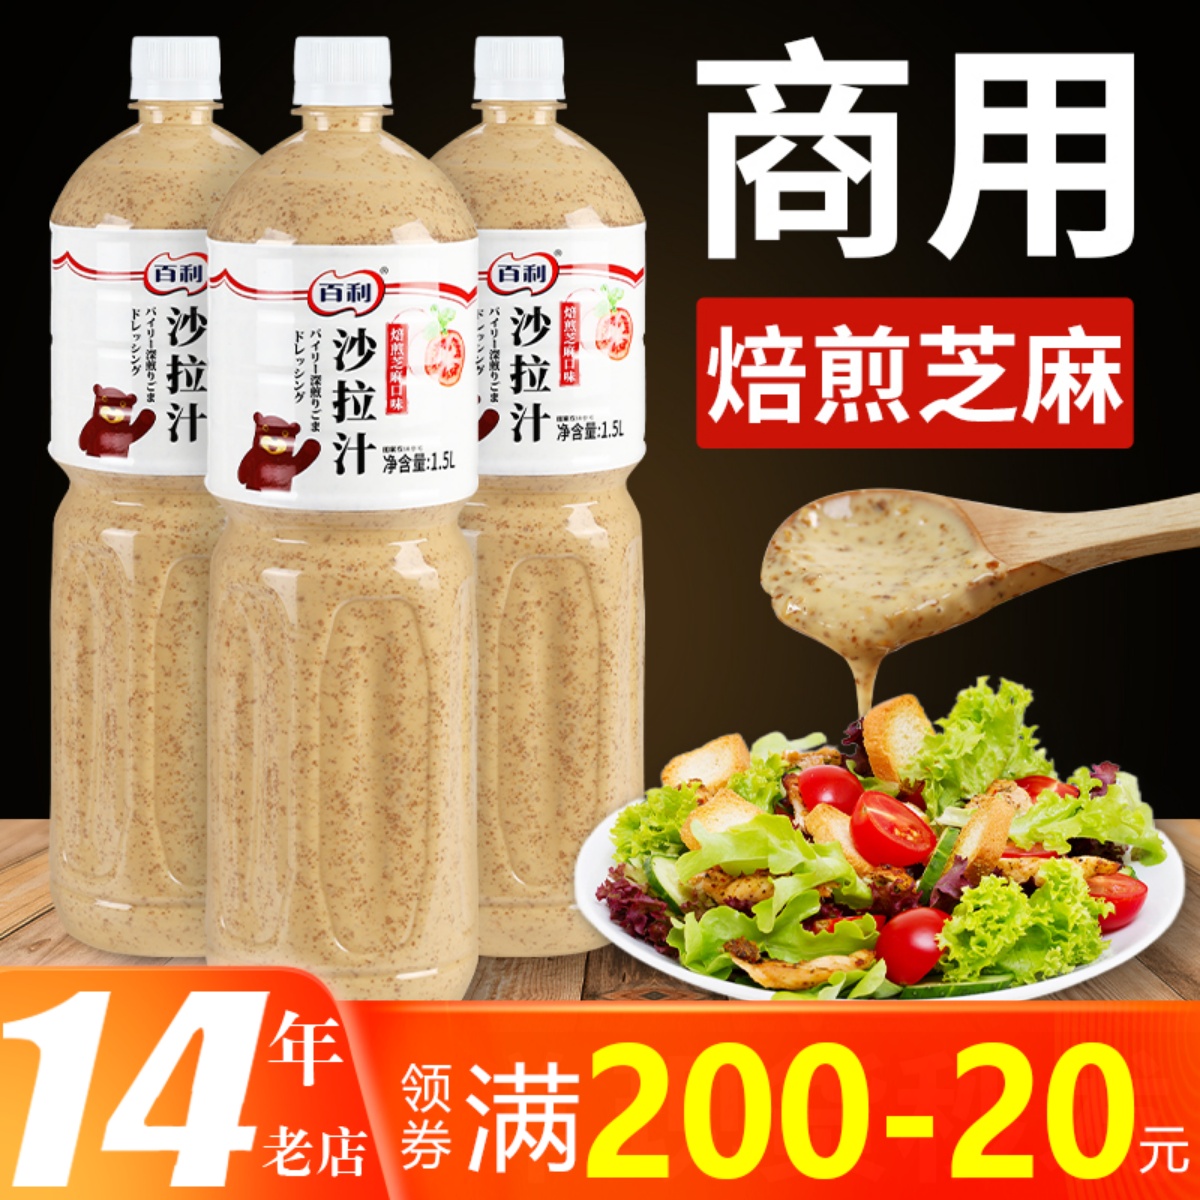 百利沙拉酱商用蔬菜水果焙煎芝麻口味日式沙拉汁轻食火锅蘸料1.5L